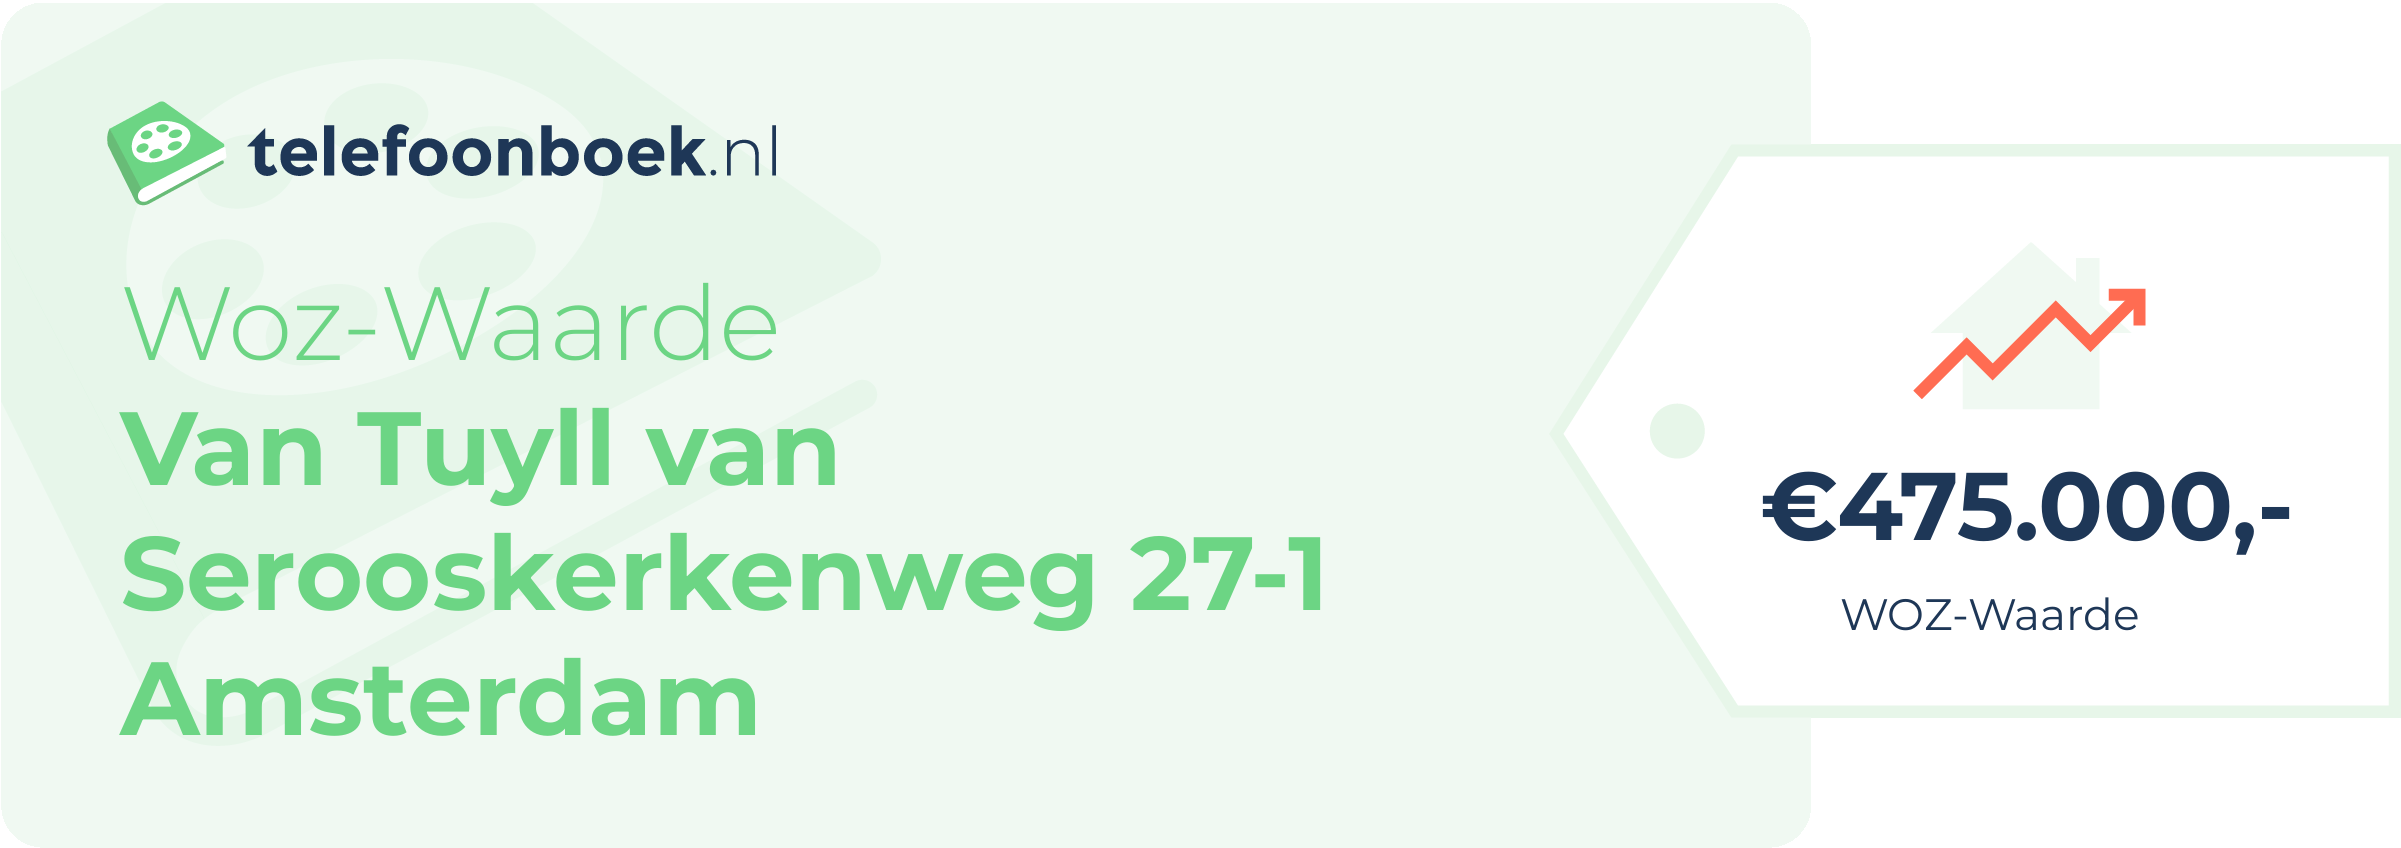 WOZ-waarde Van Tuyll Van Serooskerkenweg 27-1 Amsterdam